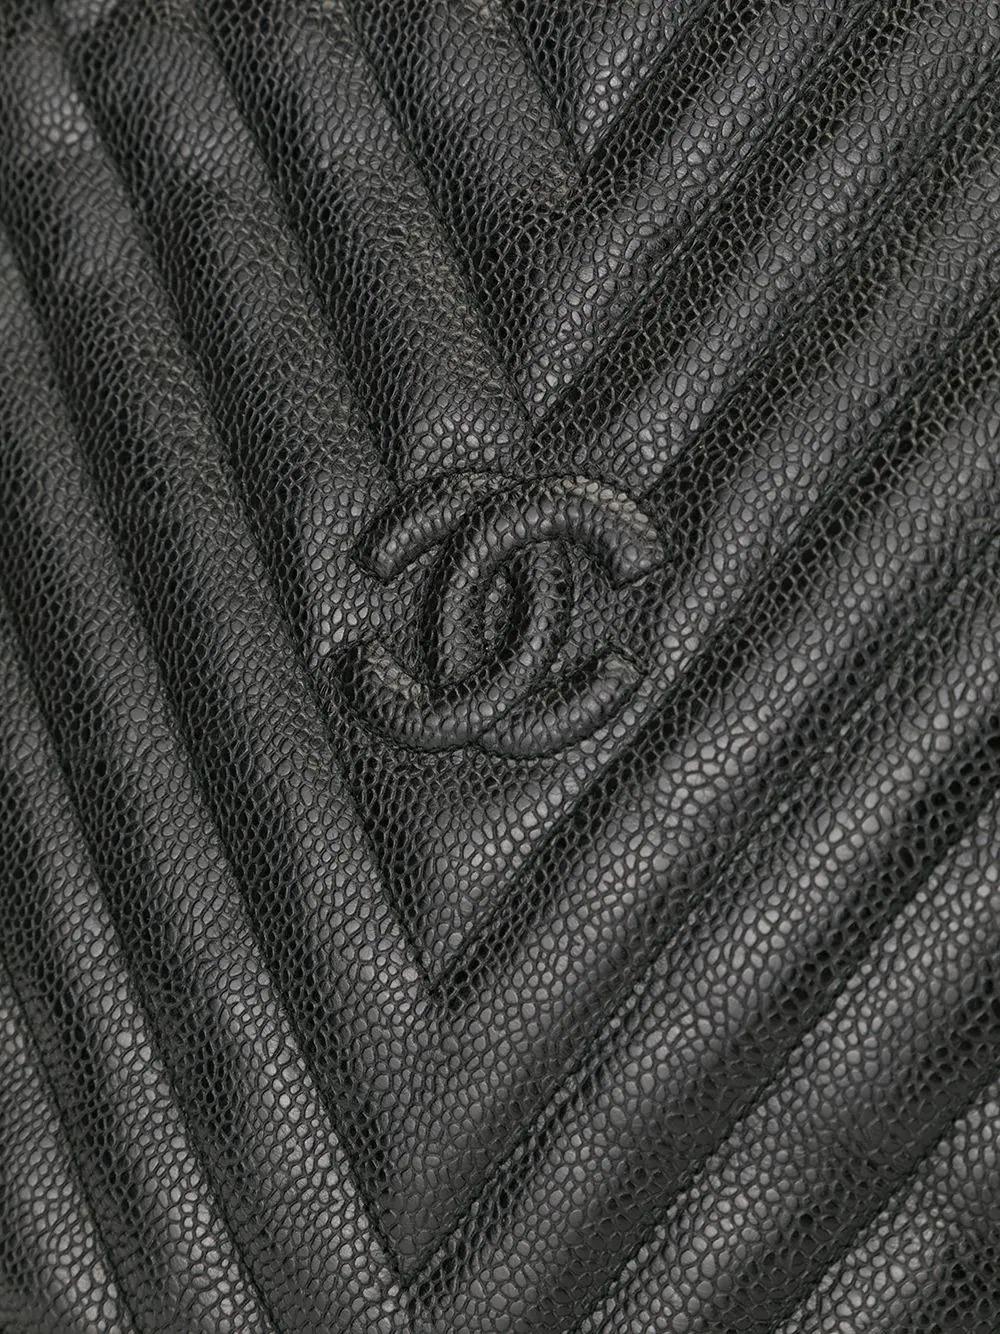 Chanel 1992 Vintage Black Caviar Chevron Tassel Fringe Tote Satchel Kelly Bag For Sale 3